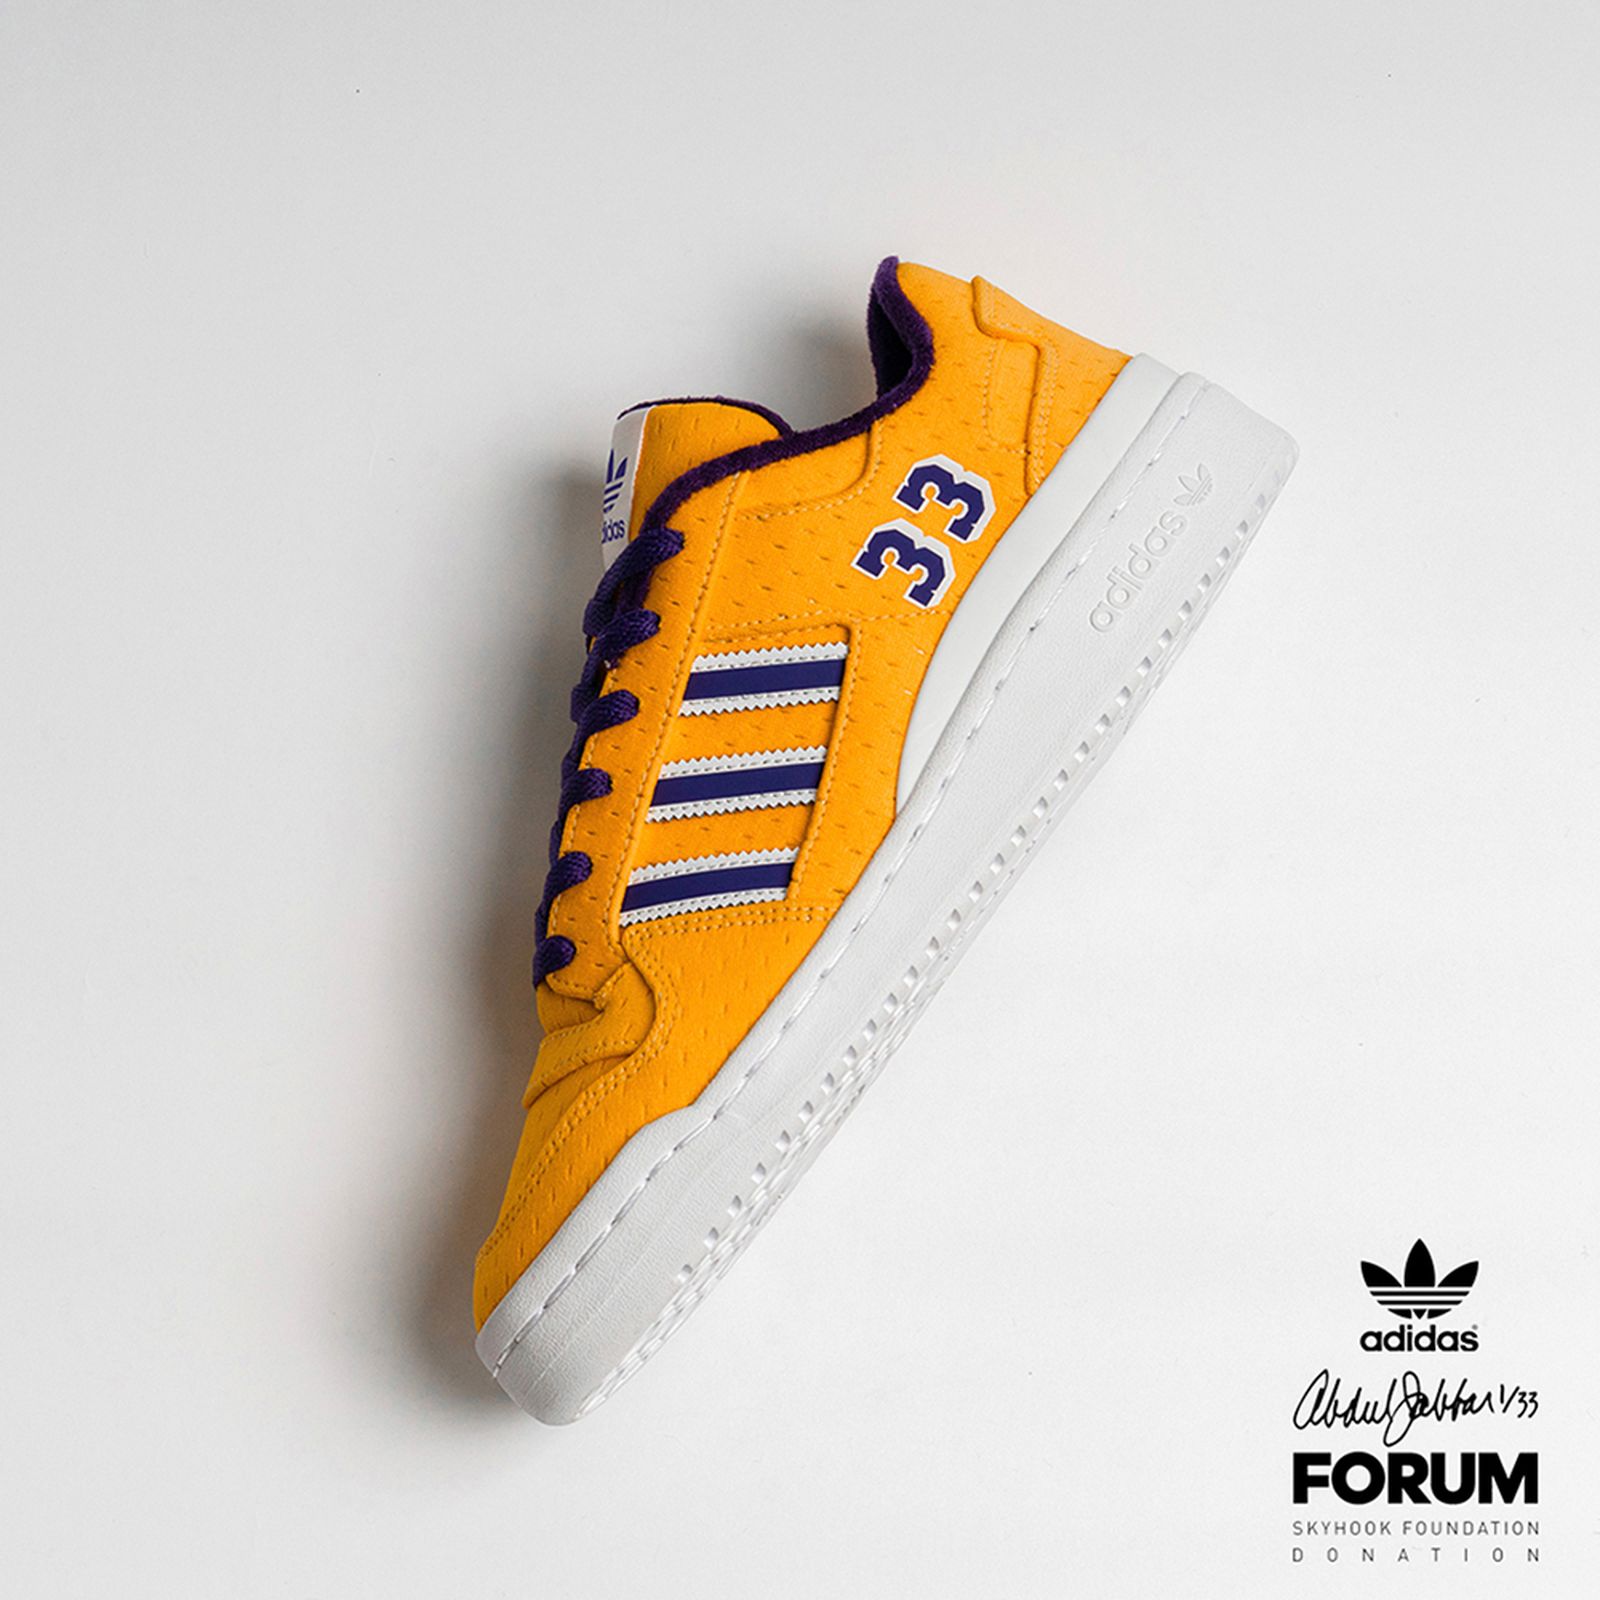 Kareem Abdul-Jabbar x adidas Forum Low: Images & How to